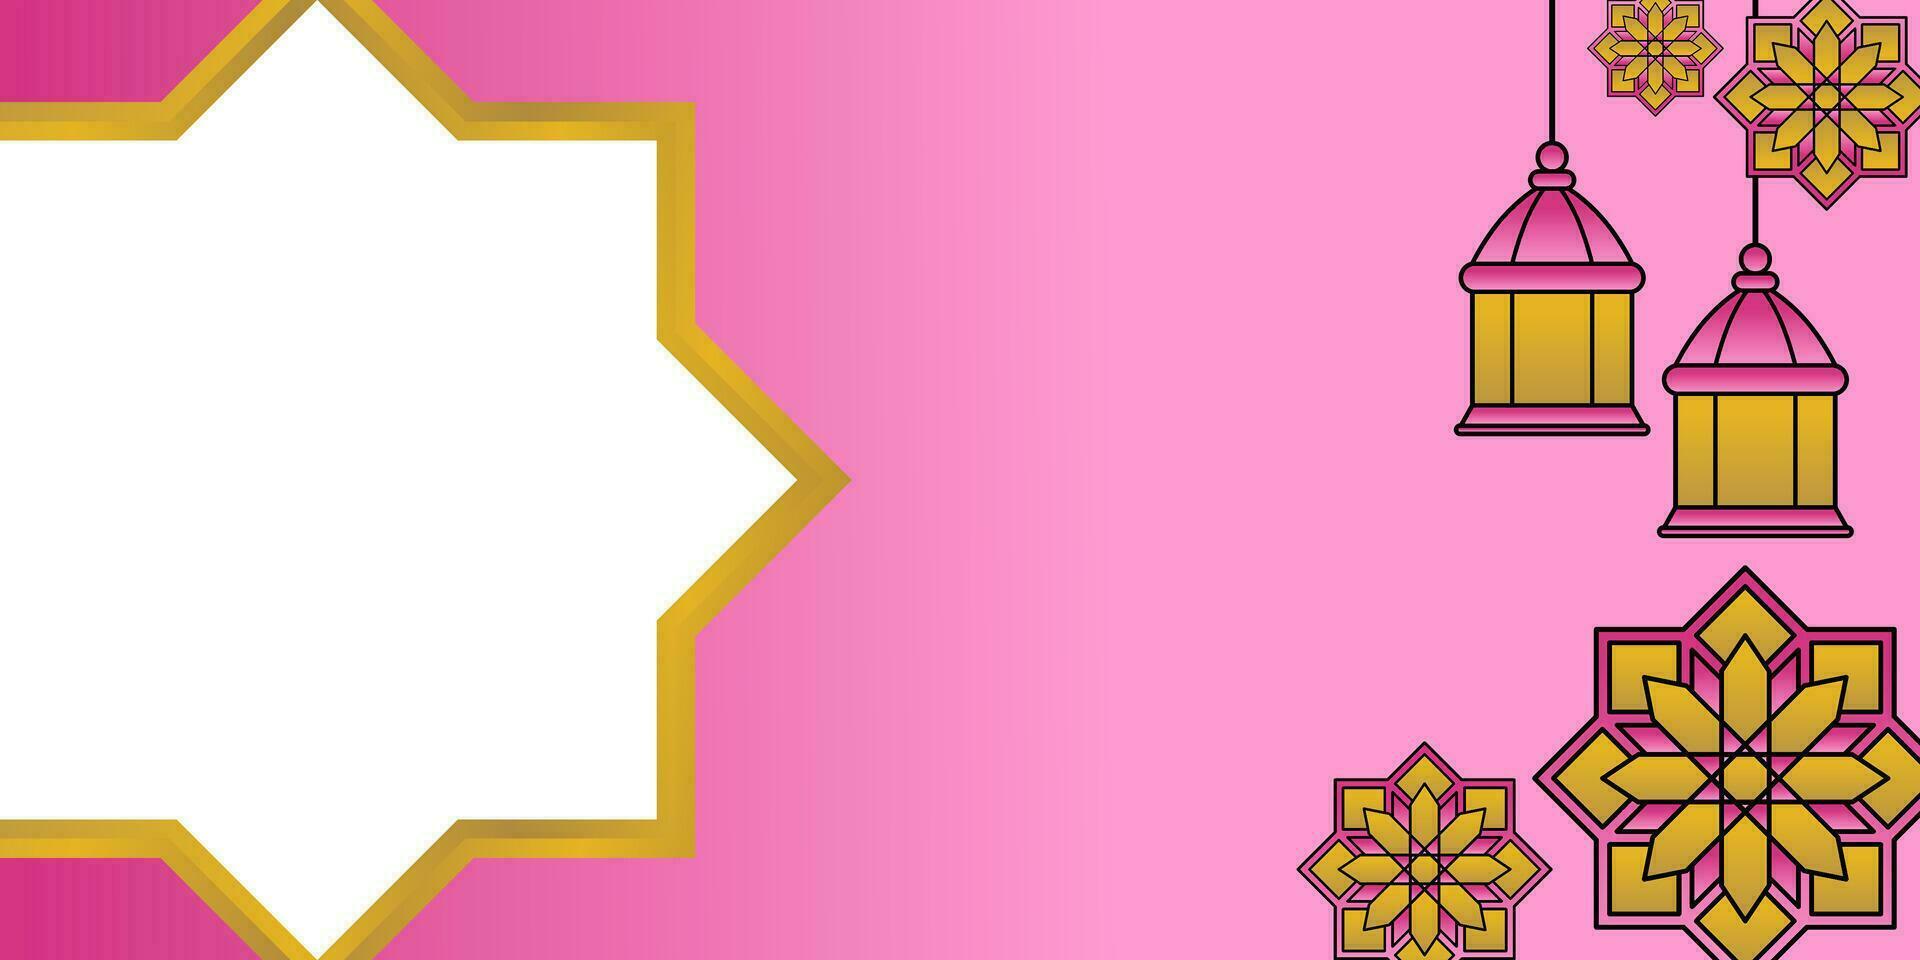 rose islamique arrière-plan, avec lanterne et mandala ornements. gratuit copie espace zone. vecteur modèle pour bannière, salutation carte pour islamique vacances, eid al fitr, Ramadan, eid al-adha